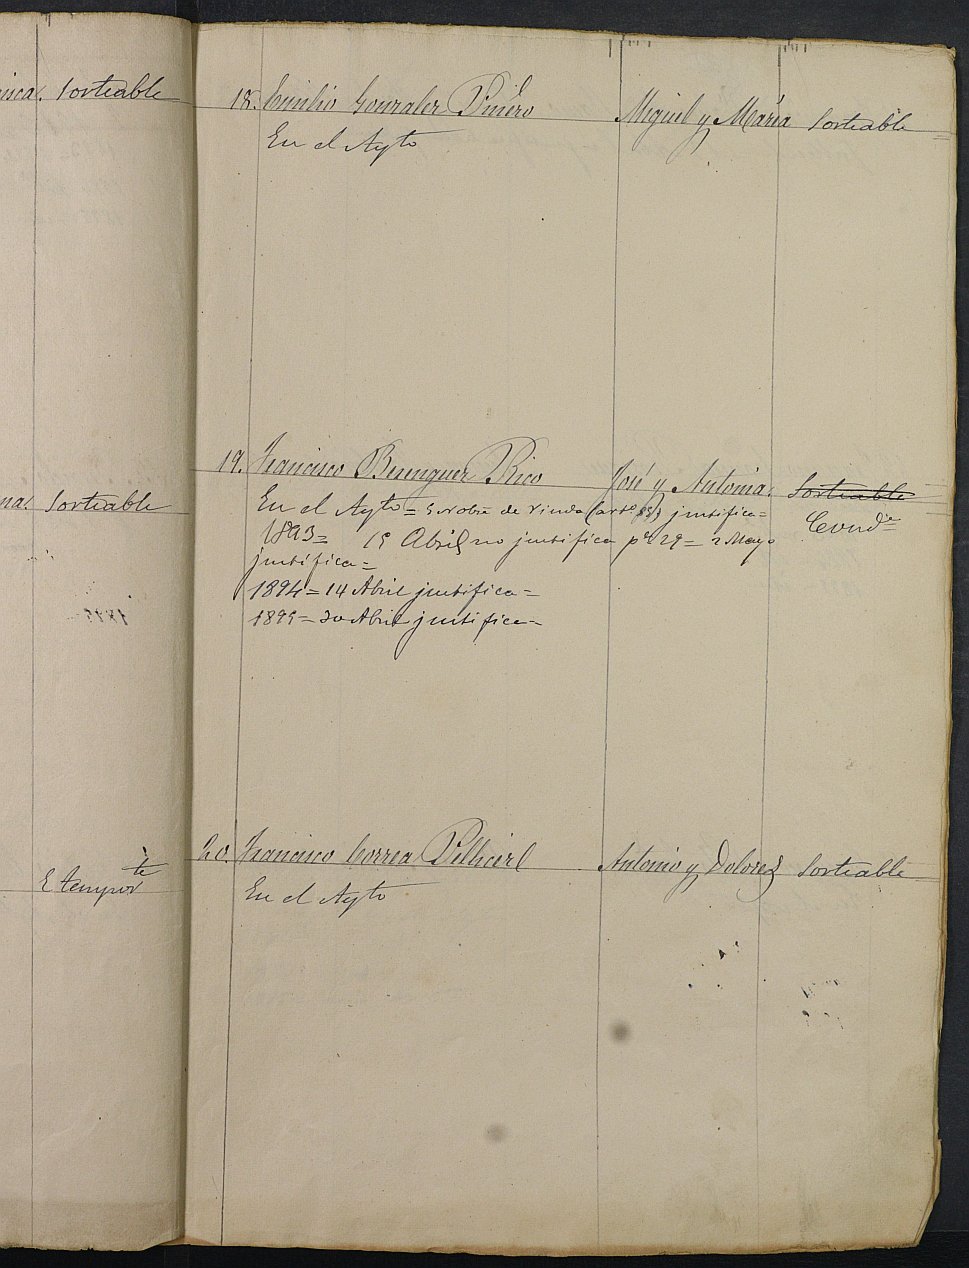 Relación de individuos declarados soldados e ingresados en Caja de la Sección 2ª del Ayuntamiento de Cartagena de 1892.